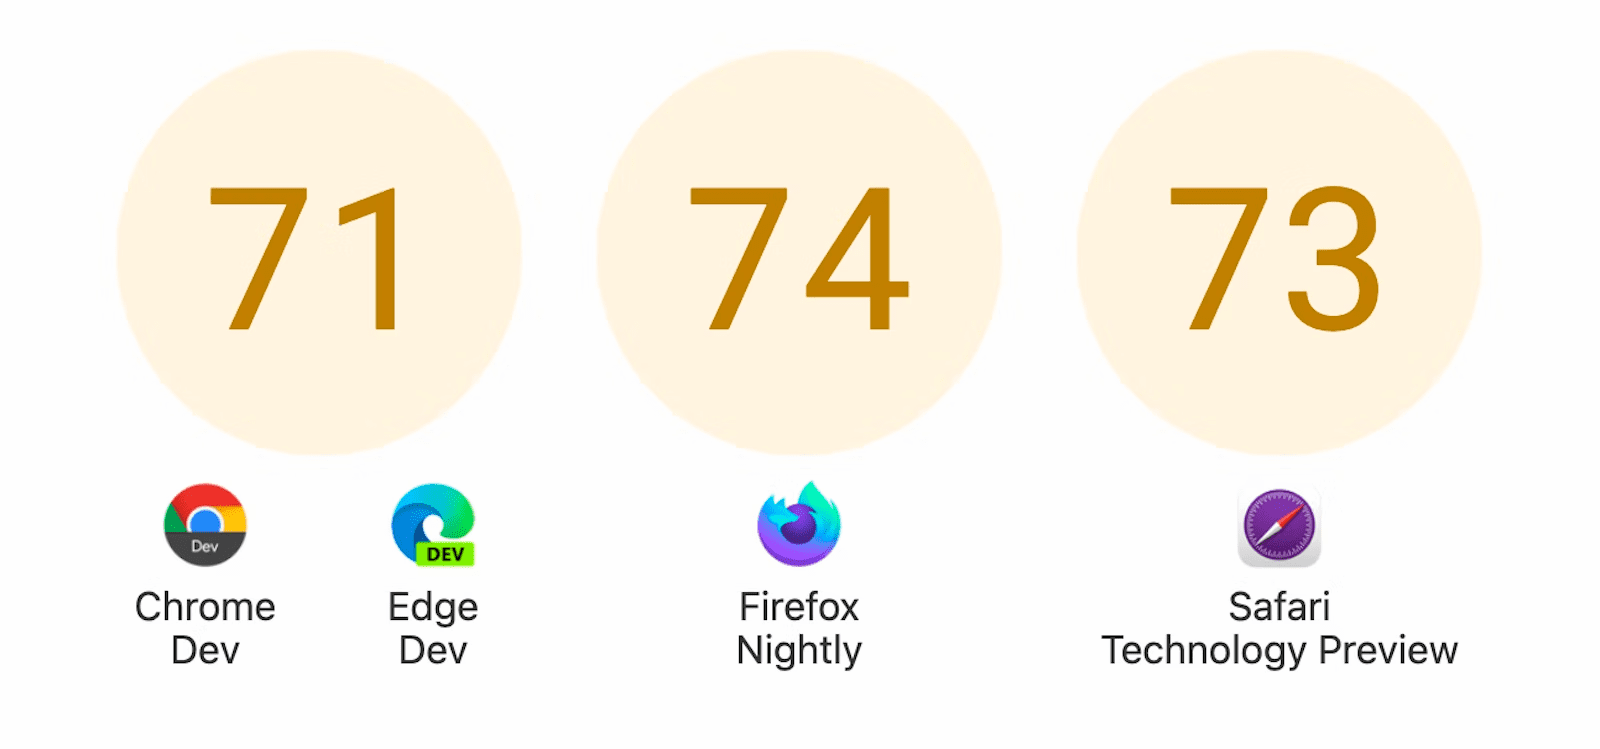 กำลังแสดงวงกลม 3 วงที่มีคะแนน ได้แก่ 71 สำหรับ Chrome Dev และ Edge Dev, 74 สำหรับ Firefox Nightly และ 73 สำหรับ Safari Technology Preview